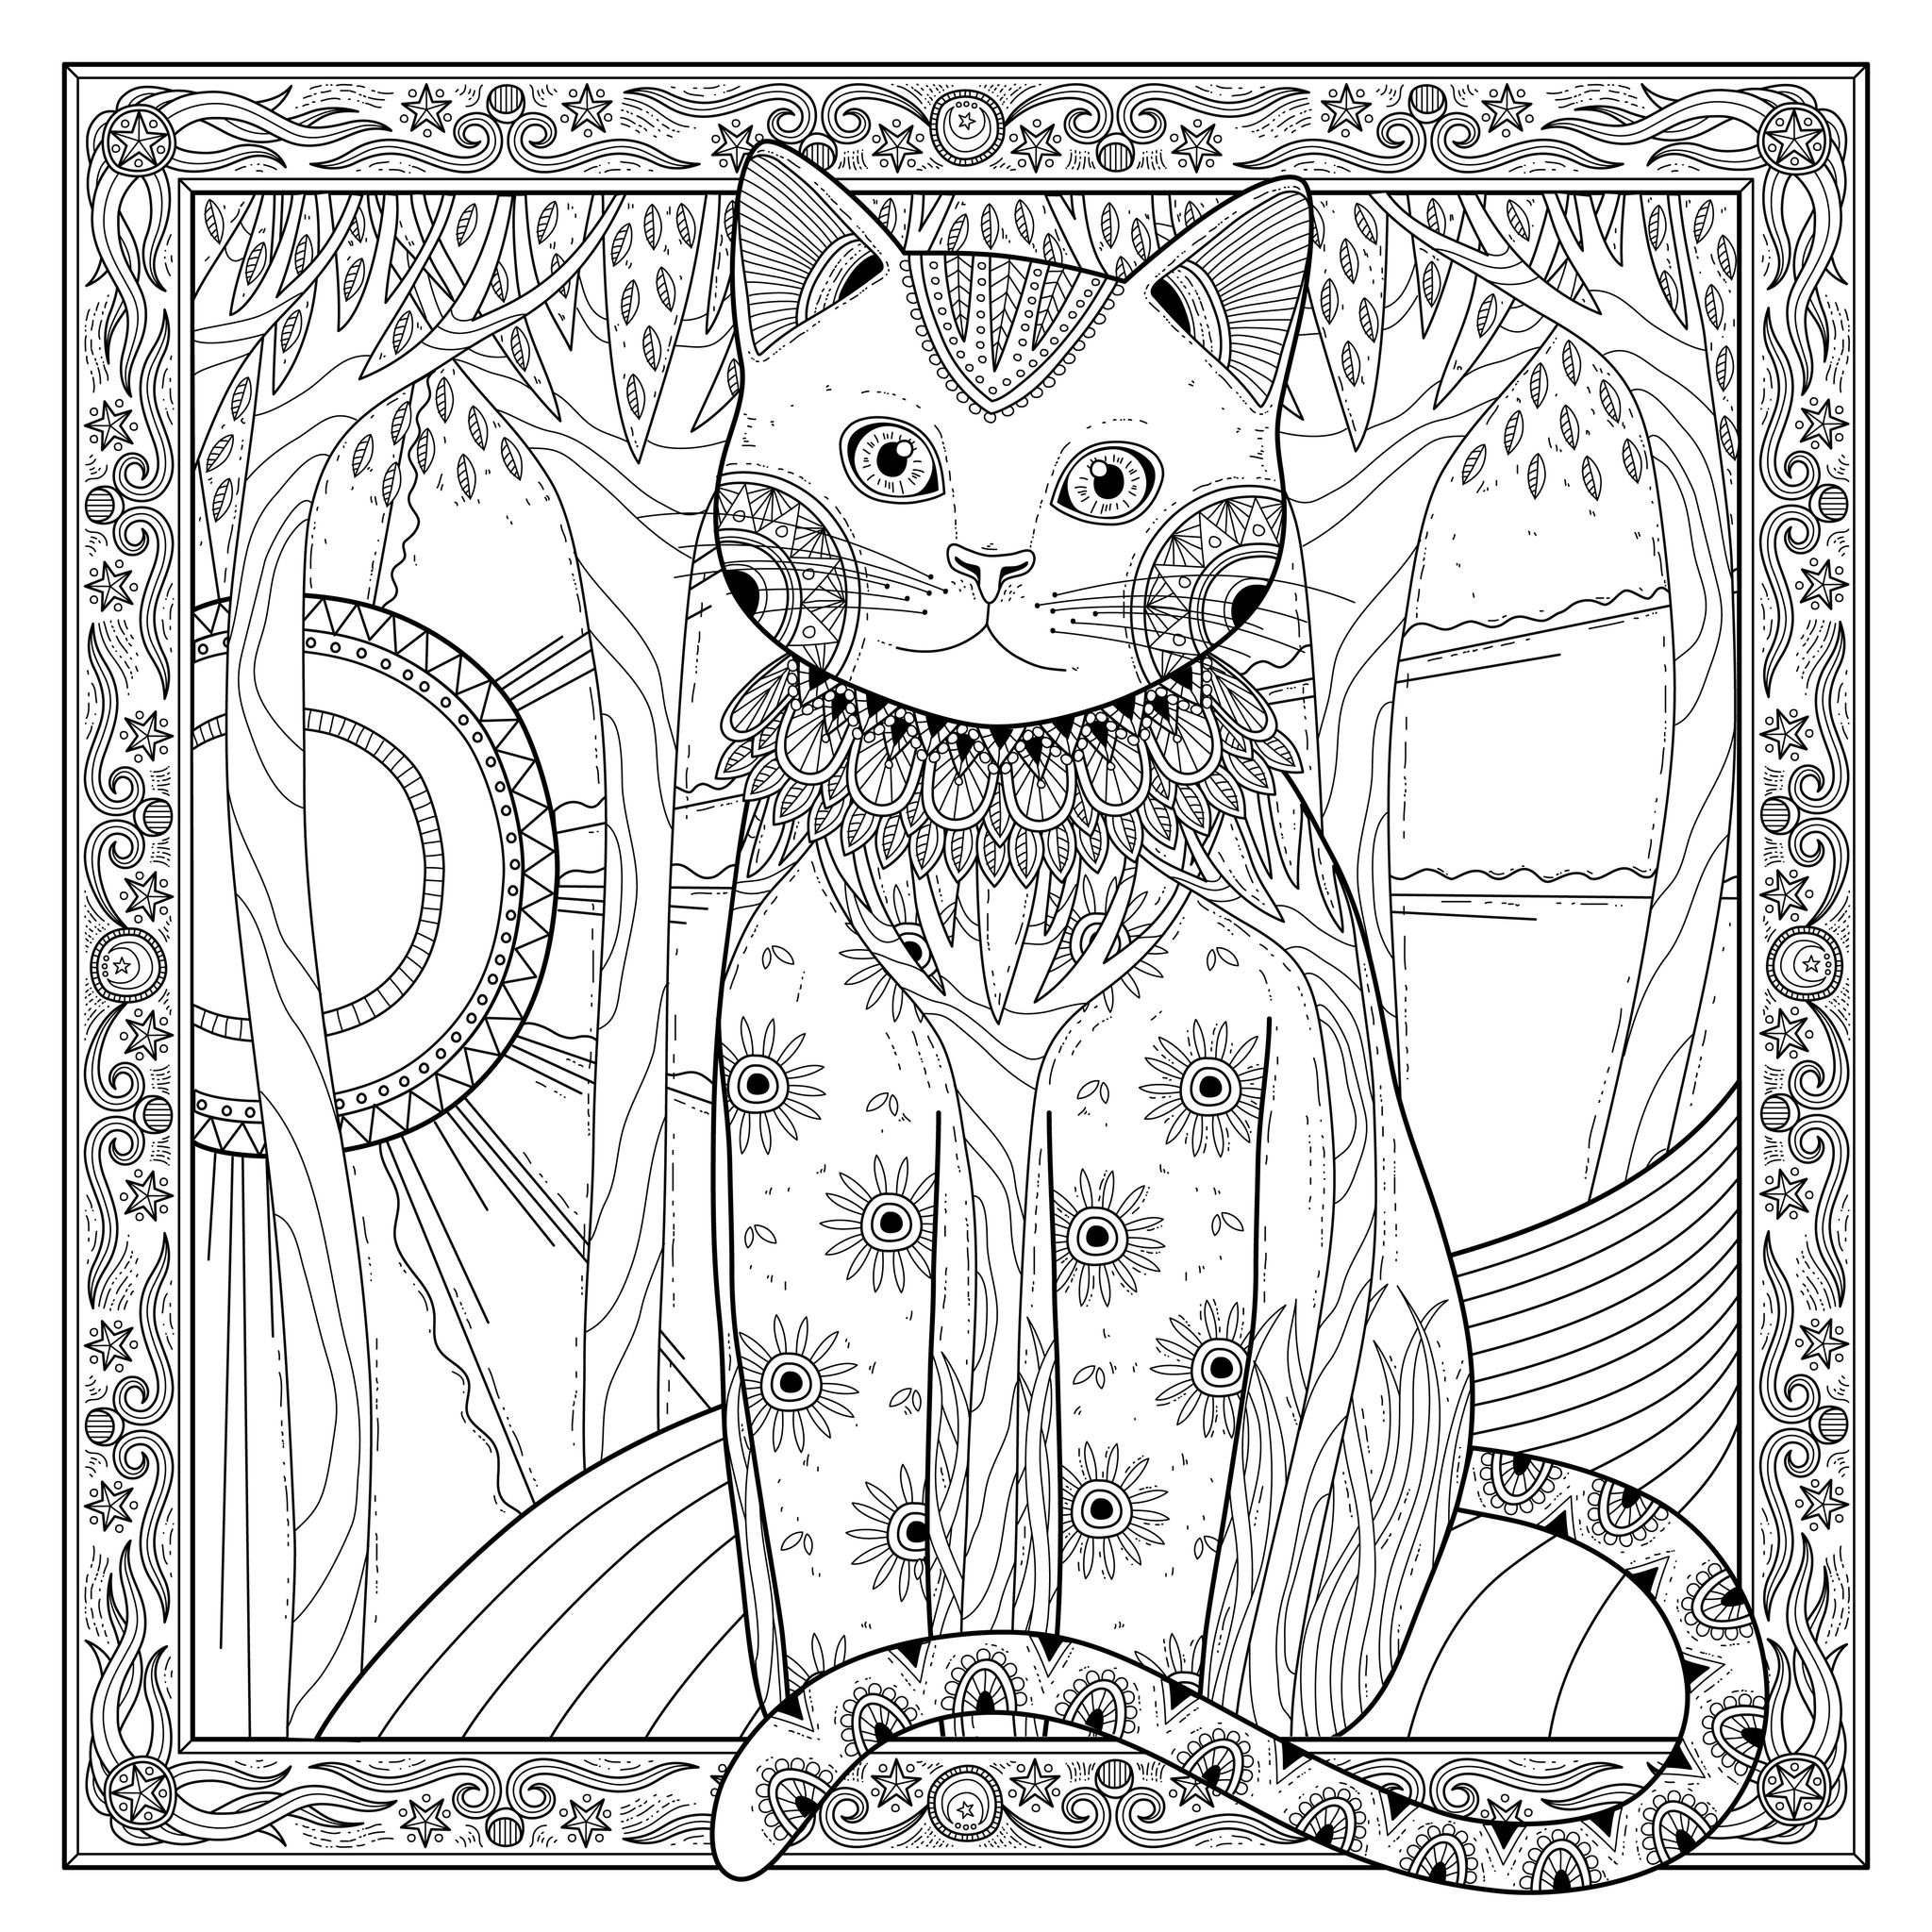 Magnifique chat avec superbe cadre, et nombreux détails, Artiste : Kchung   Source : 123rf